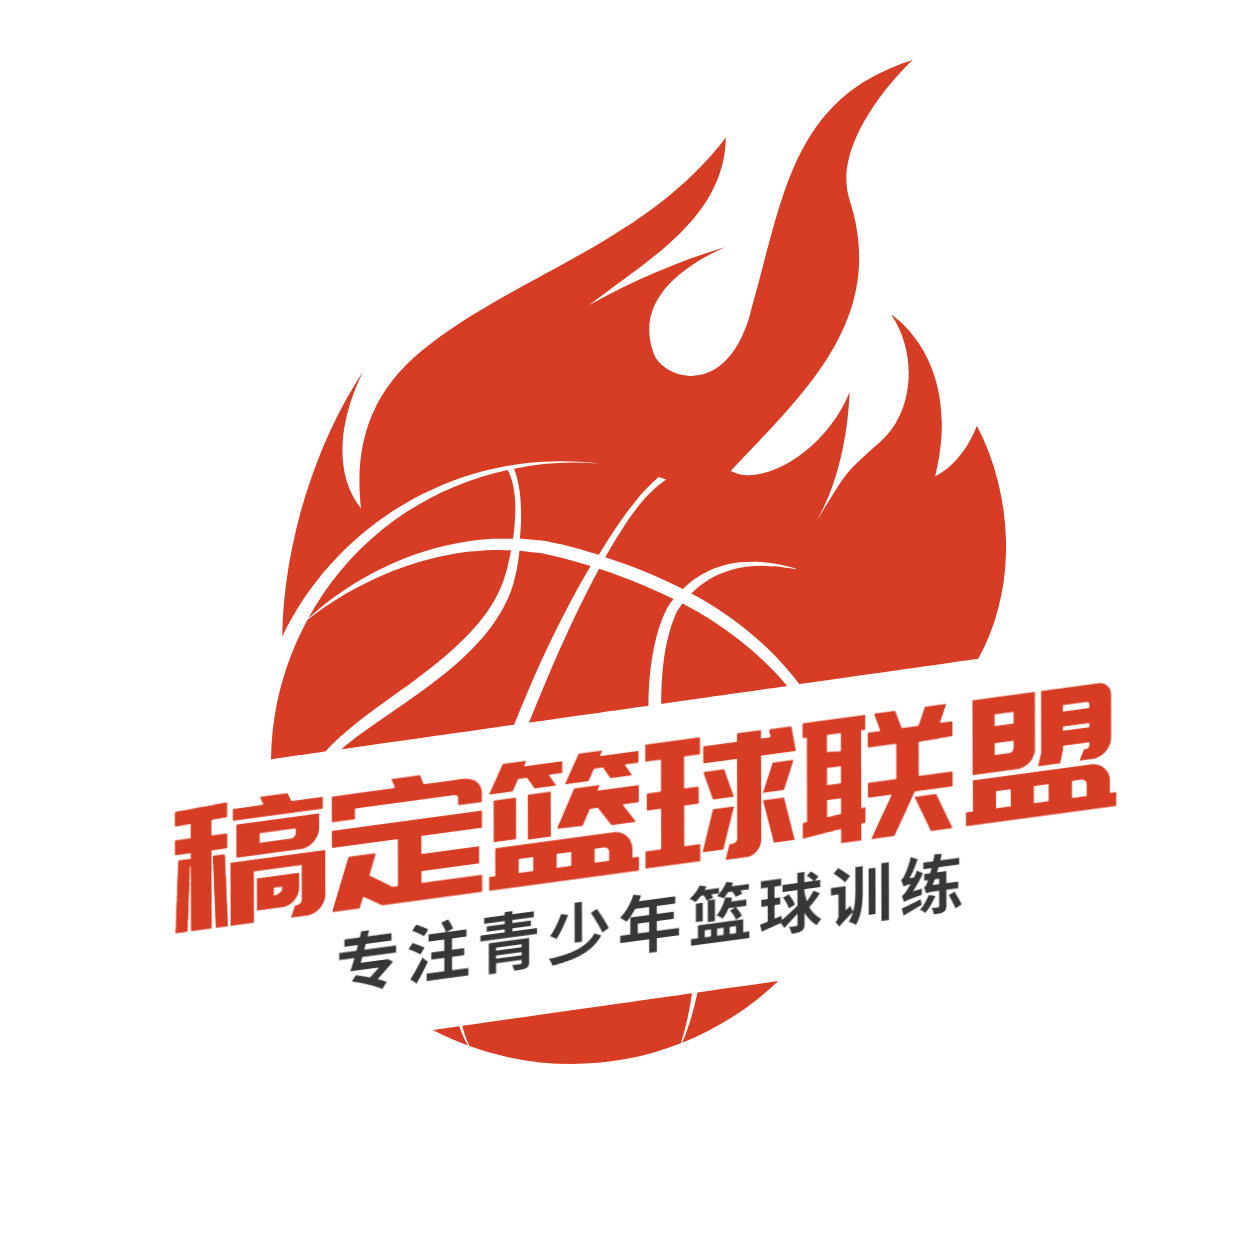 教育培训机构篮球馆标logo